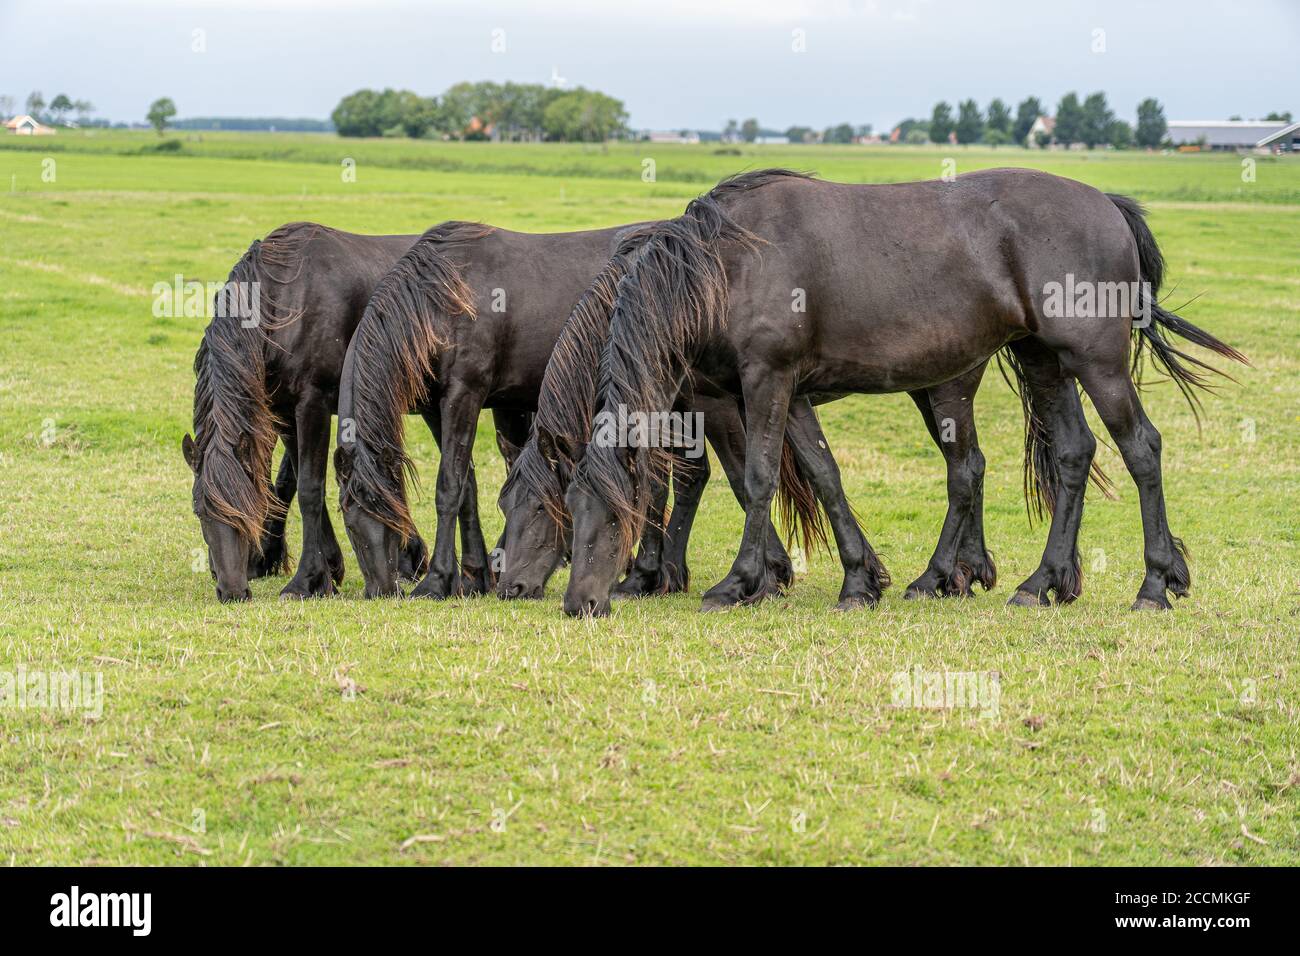 Groupe de chevaux paître dans la prairie avec une position similaire posture Banque D'Images